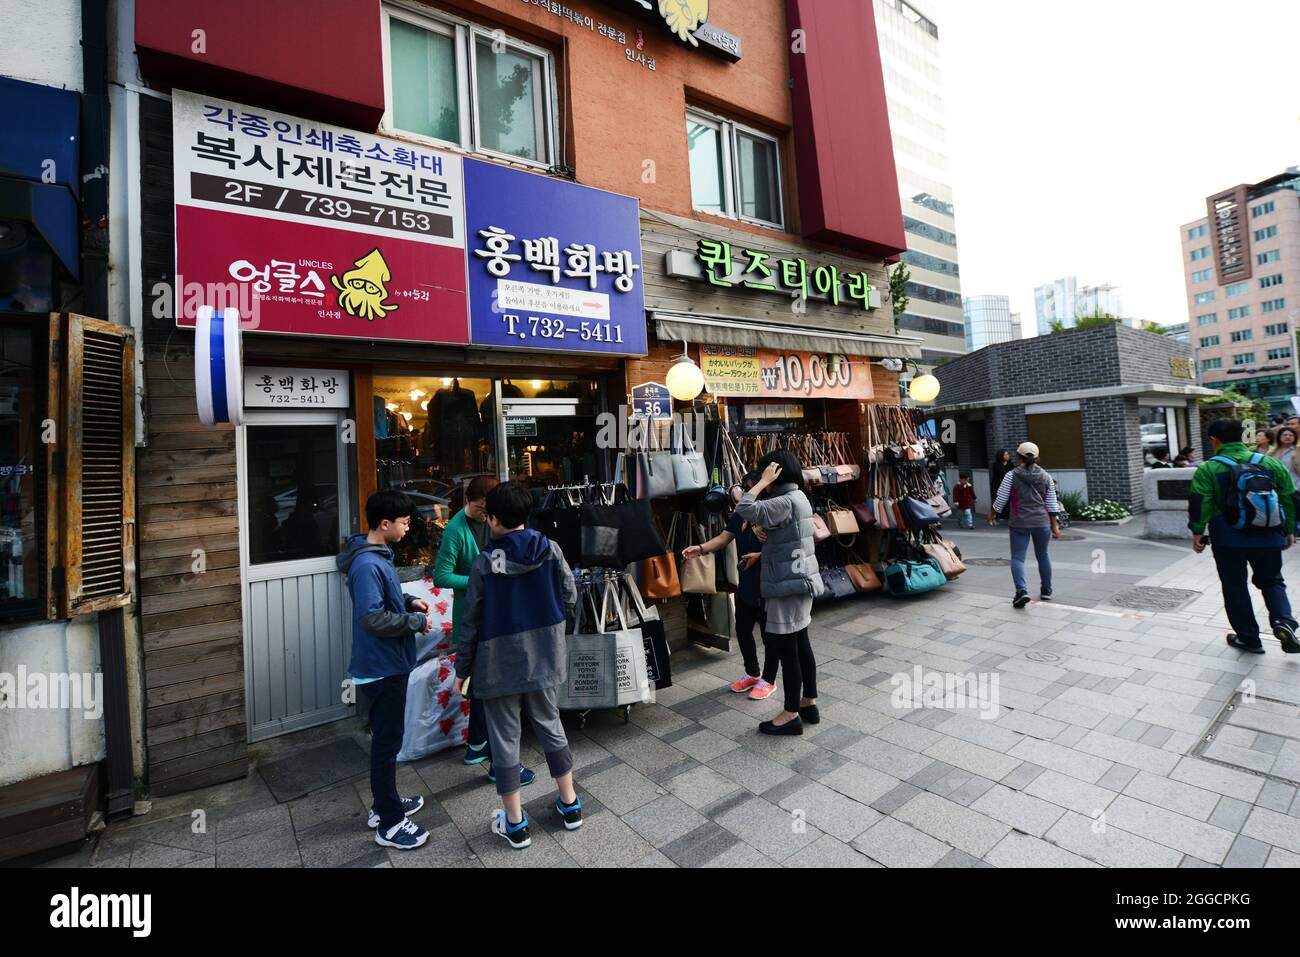 A purse shop in Insadong, South Korea. Stock Photo